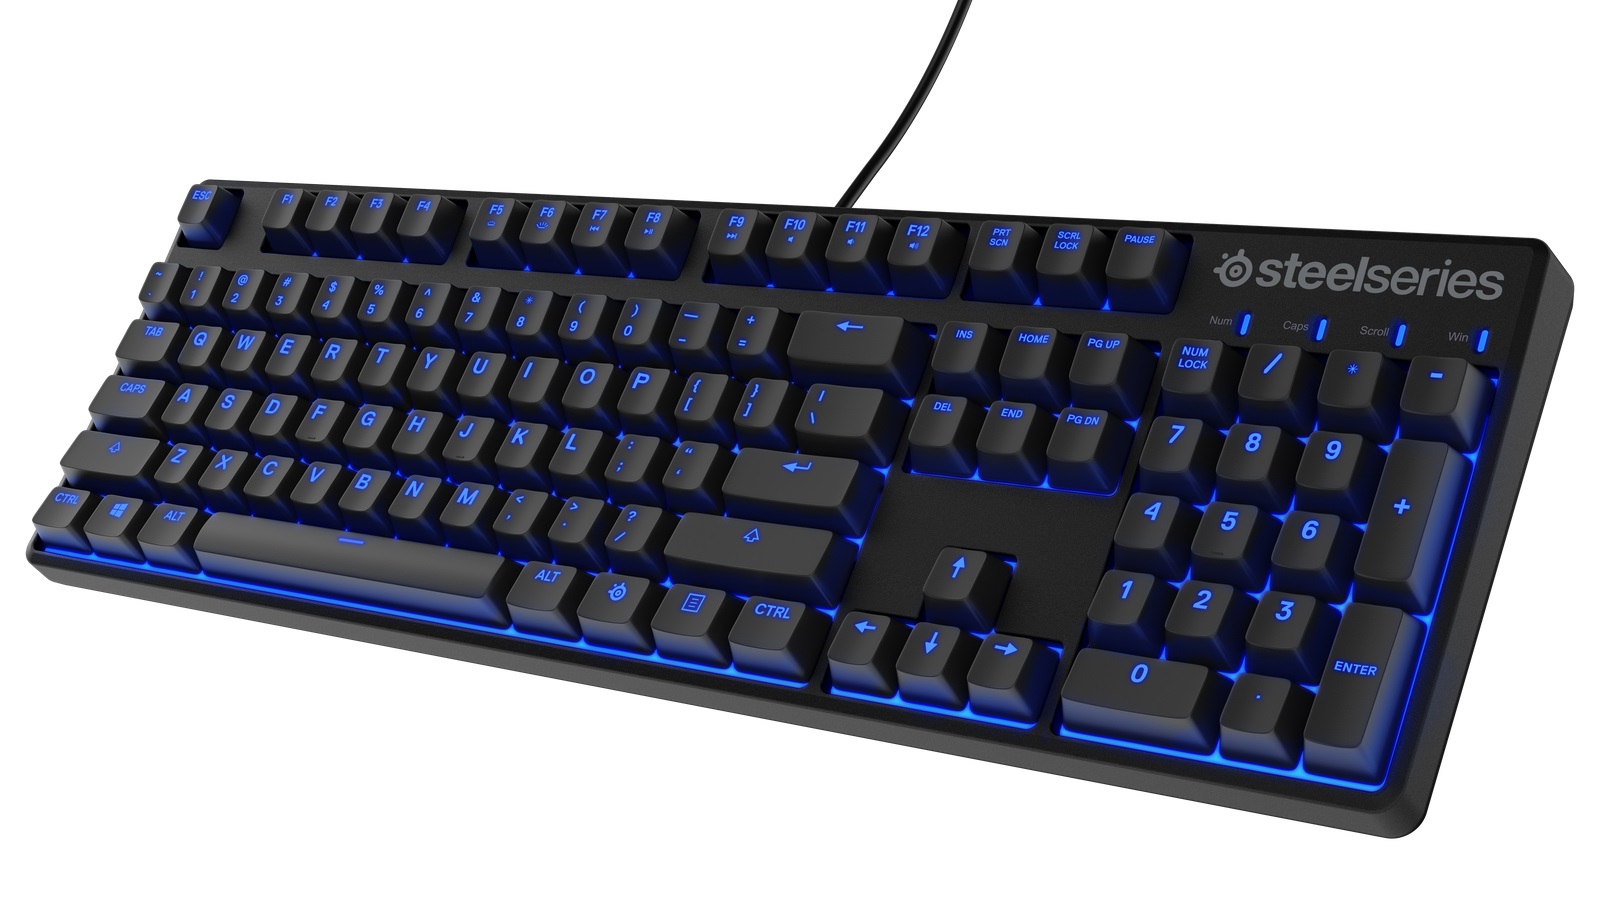 SteelSeries Release Apex 500 Mechanical Gaming Keyboard